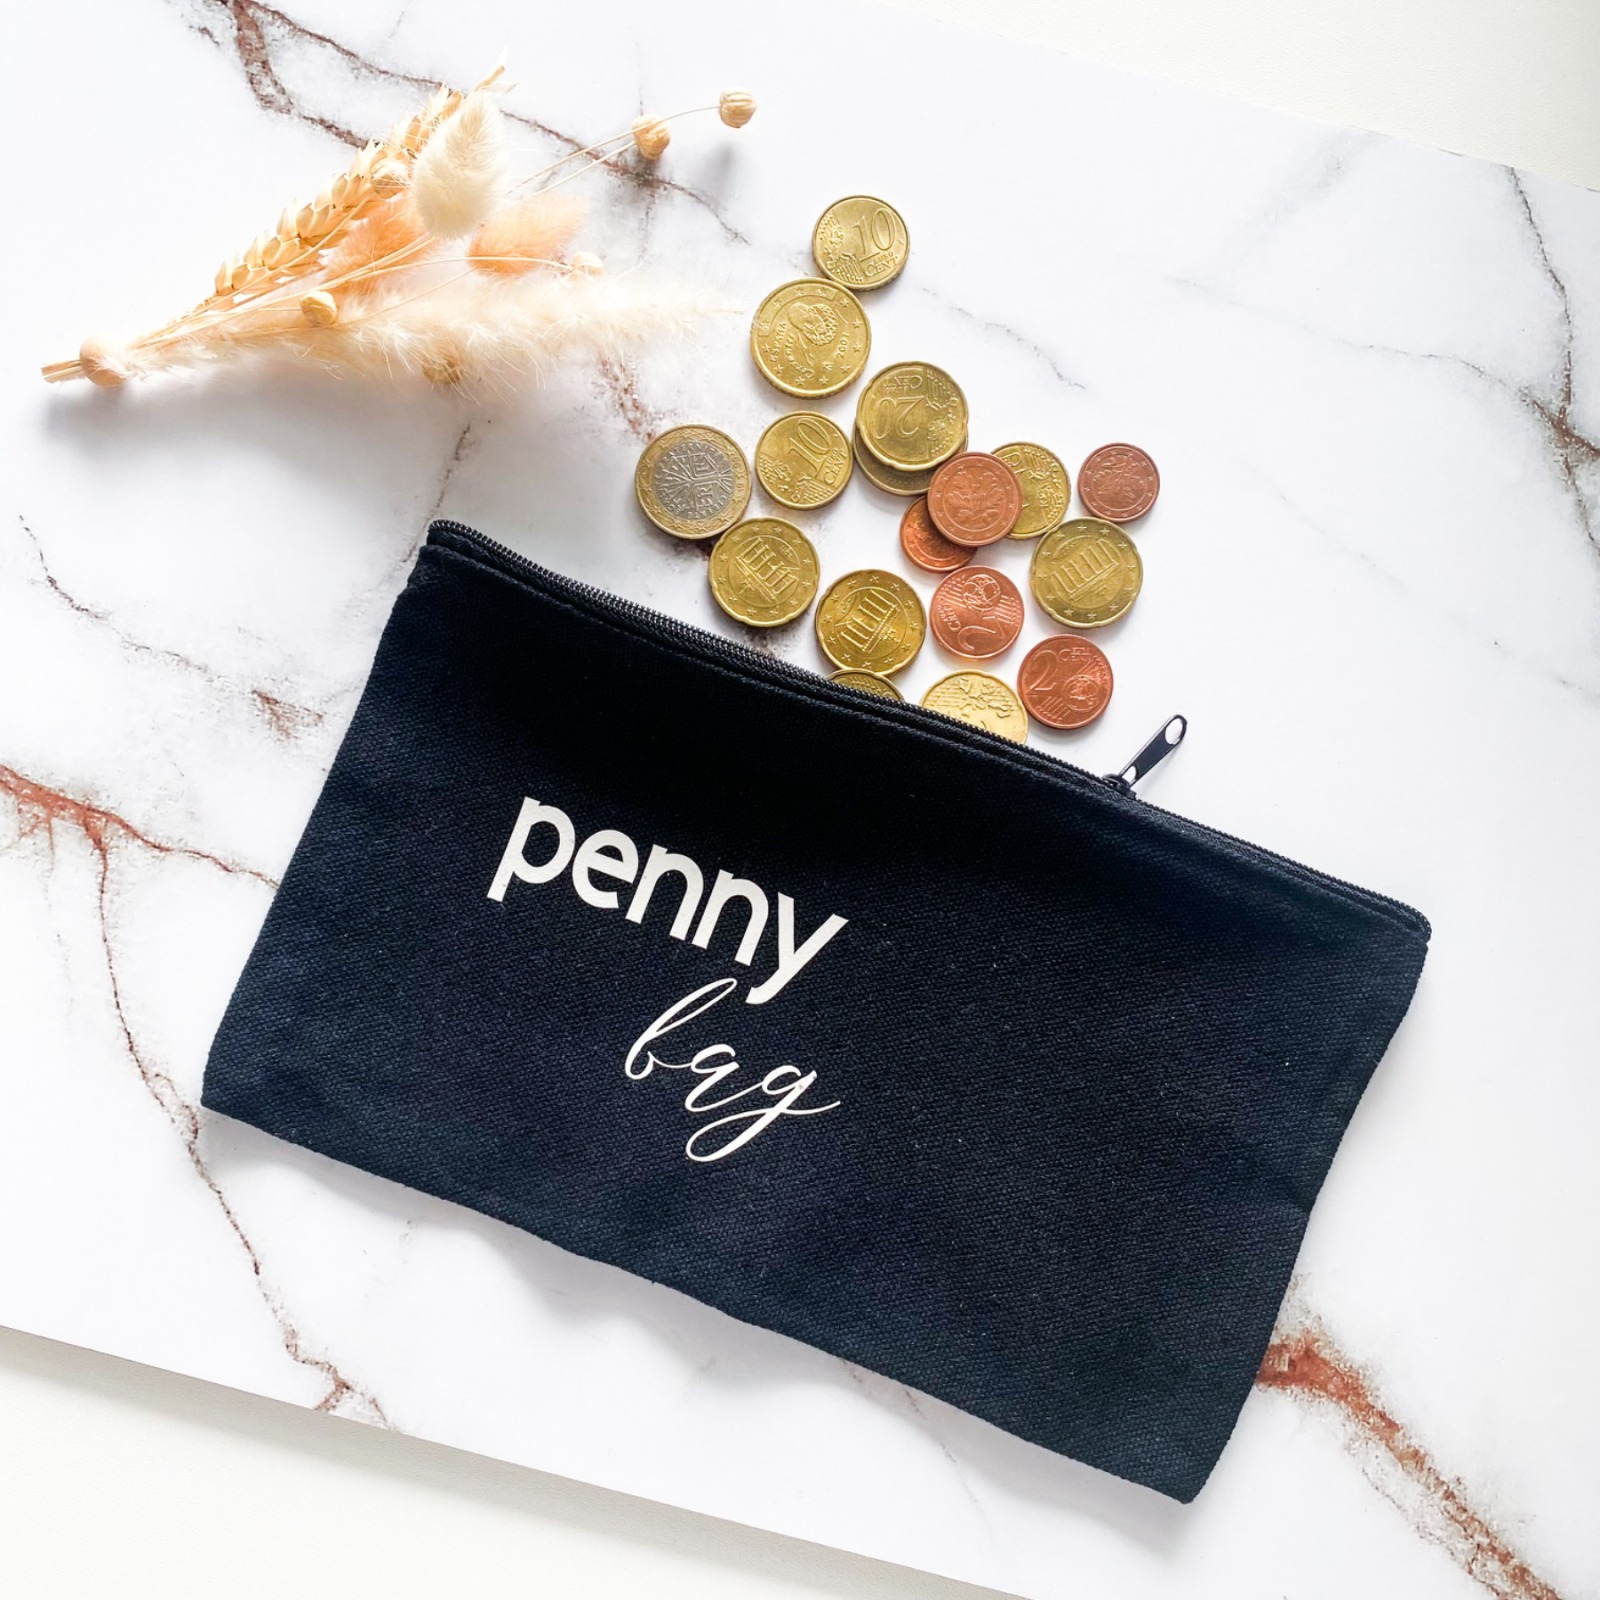 pennybag | Kleingeldtasche | mit Sparchallenge Kleingeldliebe | perfekt für Kleingeldchallenges 4